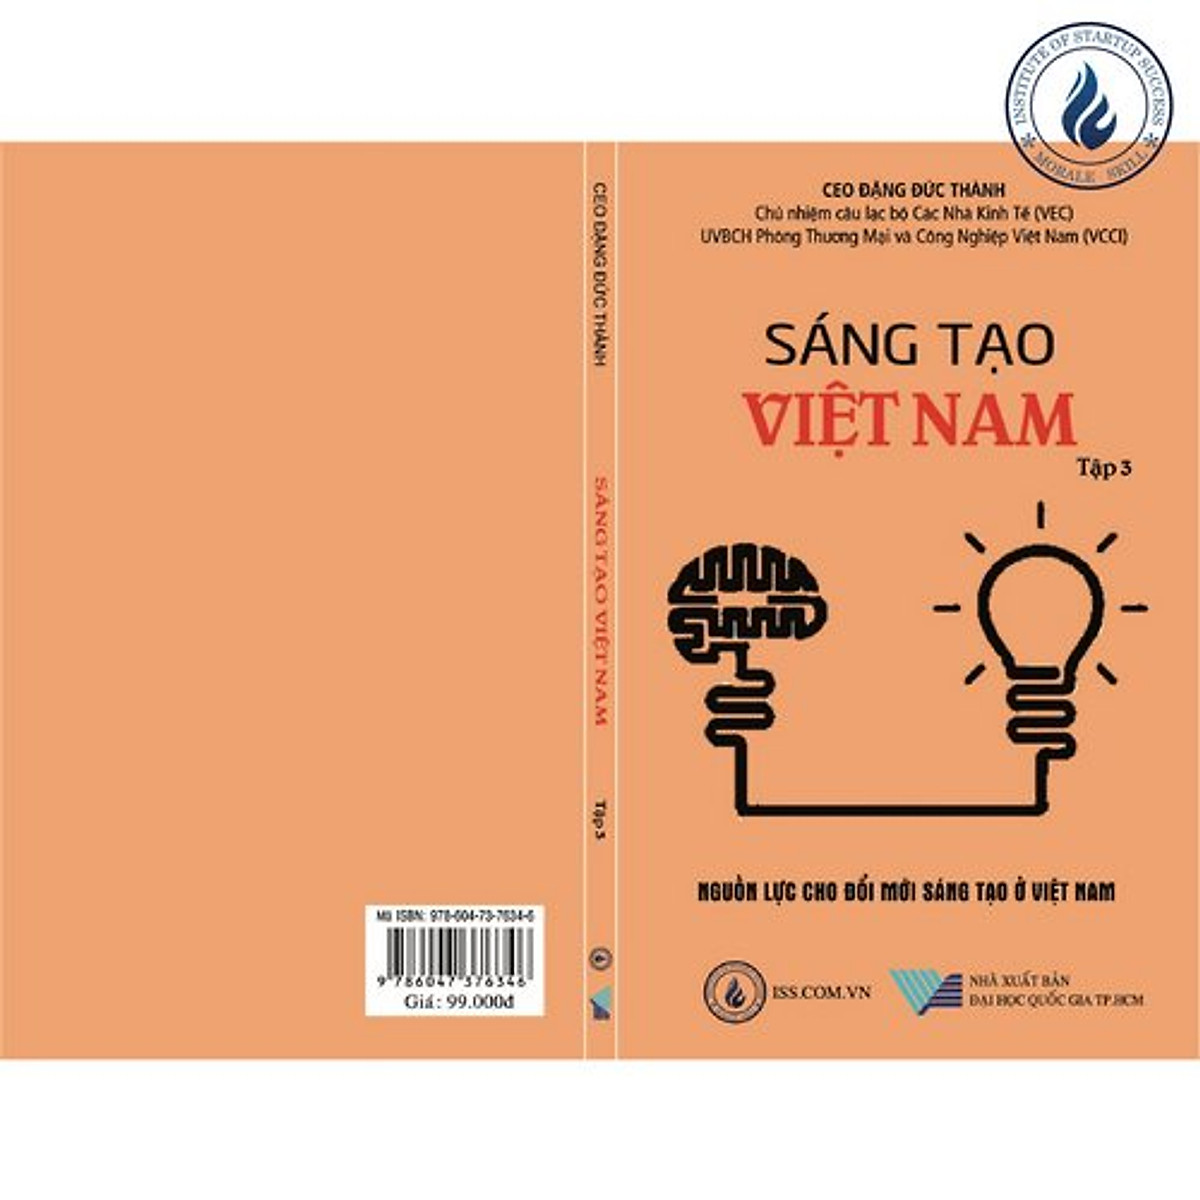 Sáng tạo Việt Nam tập 3: Nguồn lực cho đổi mới sáng tạo ở Việt Nam - CEO Đặng Đức Thành